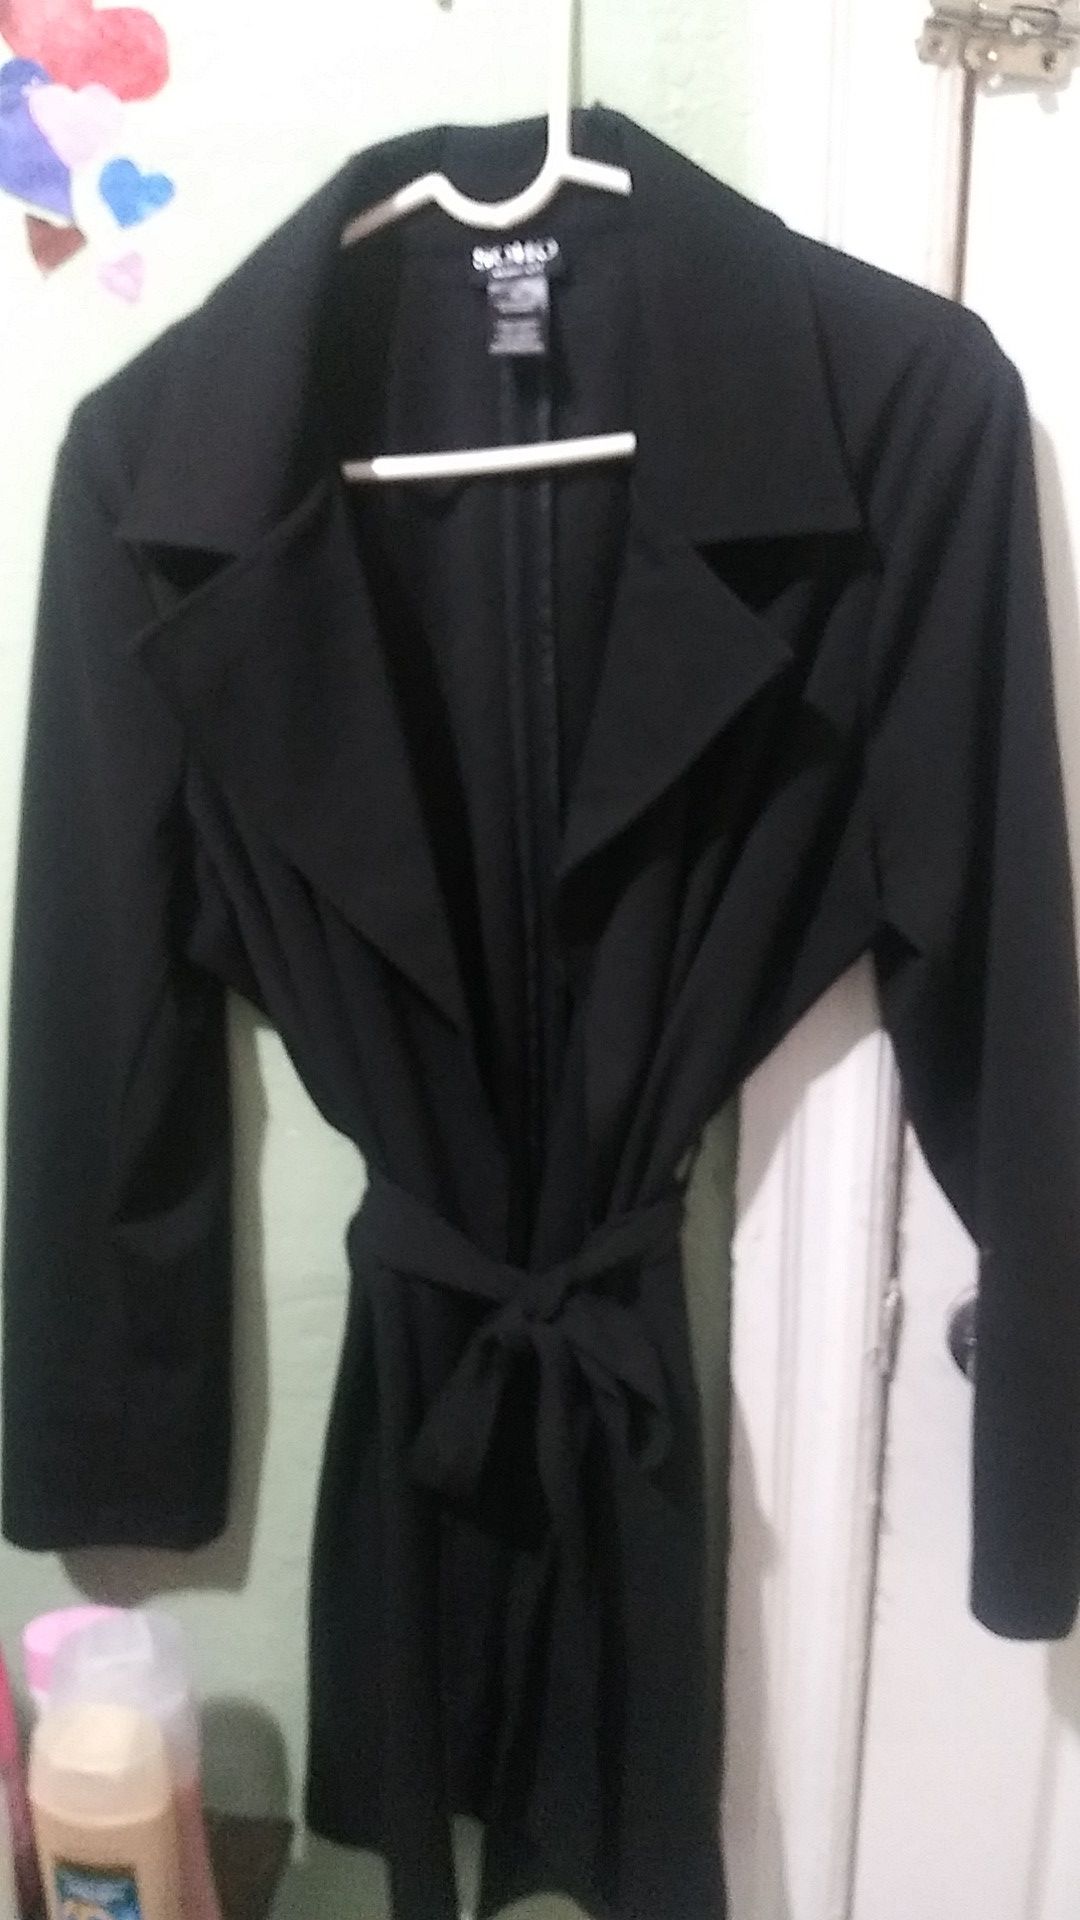 Light 3/4 length black women's dress coat $20